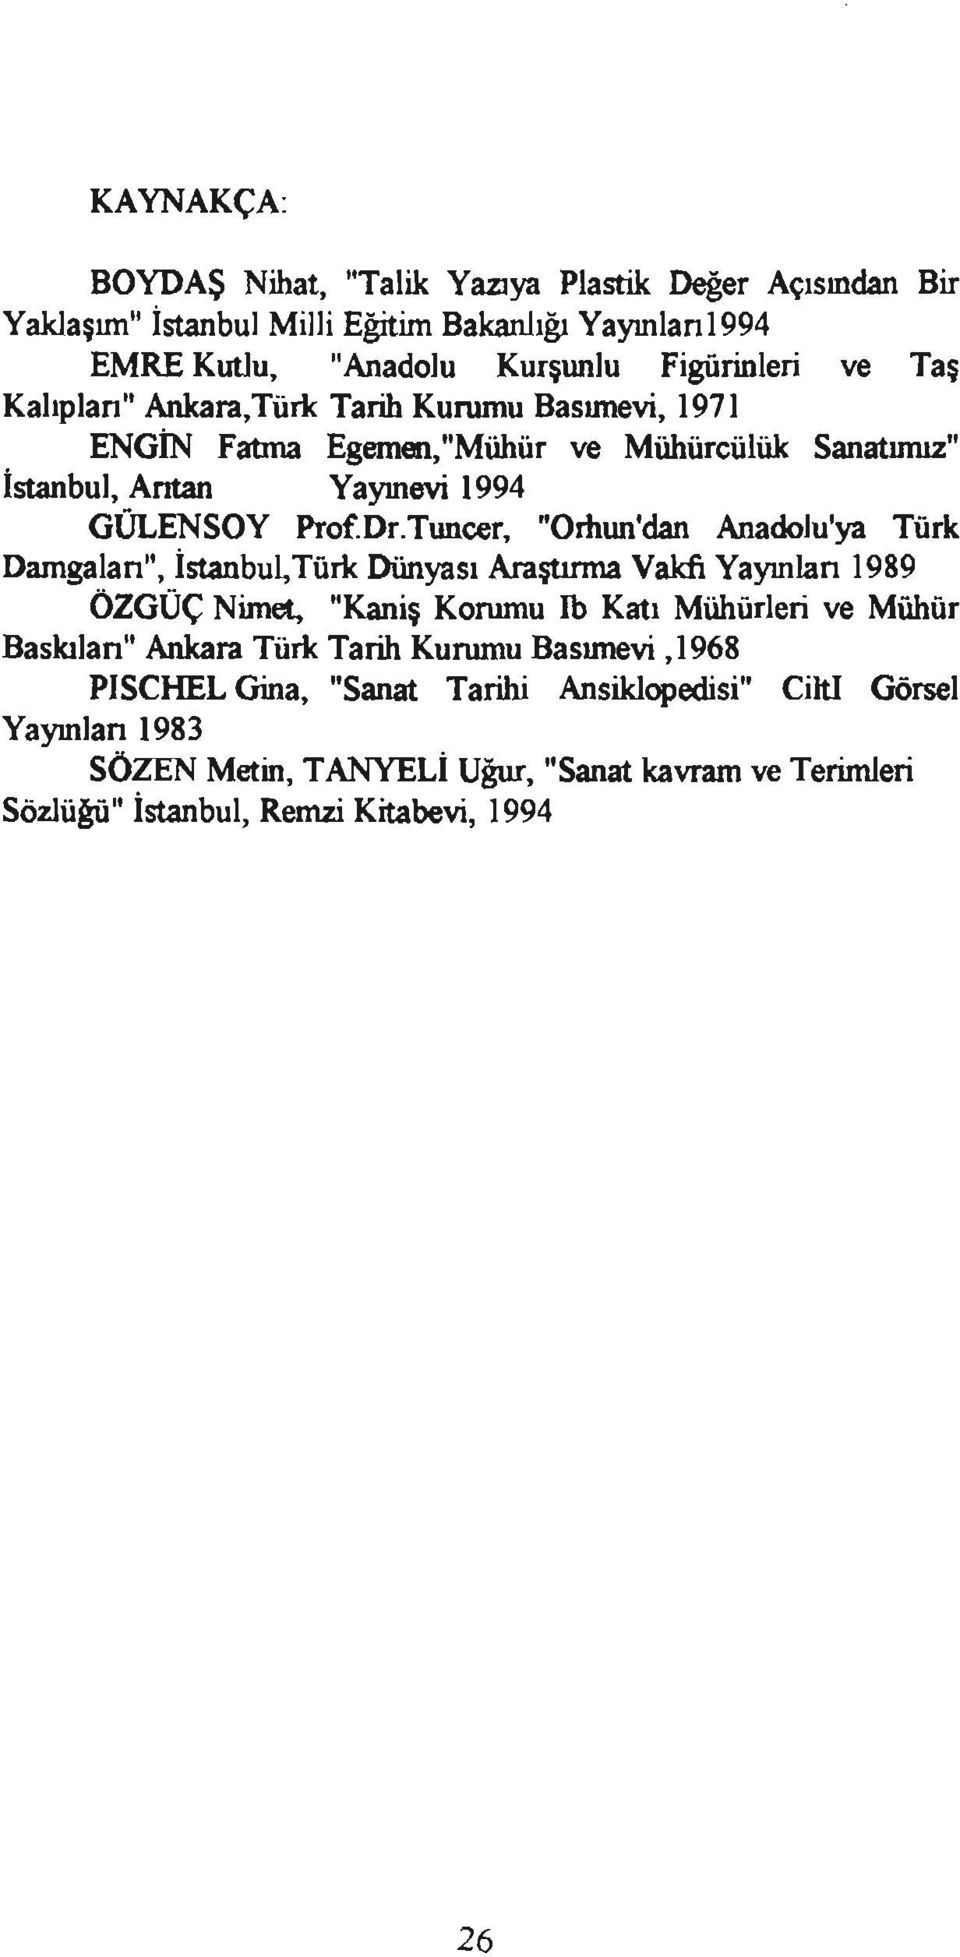 Tuncer, "Omun'dan Anadolu'ya Türk Damgalan", İsıanbul,Türk Dünyası Araştırma Vakfı Yayınlan 1989 ÖZGÜÇ Nimet.